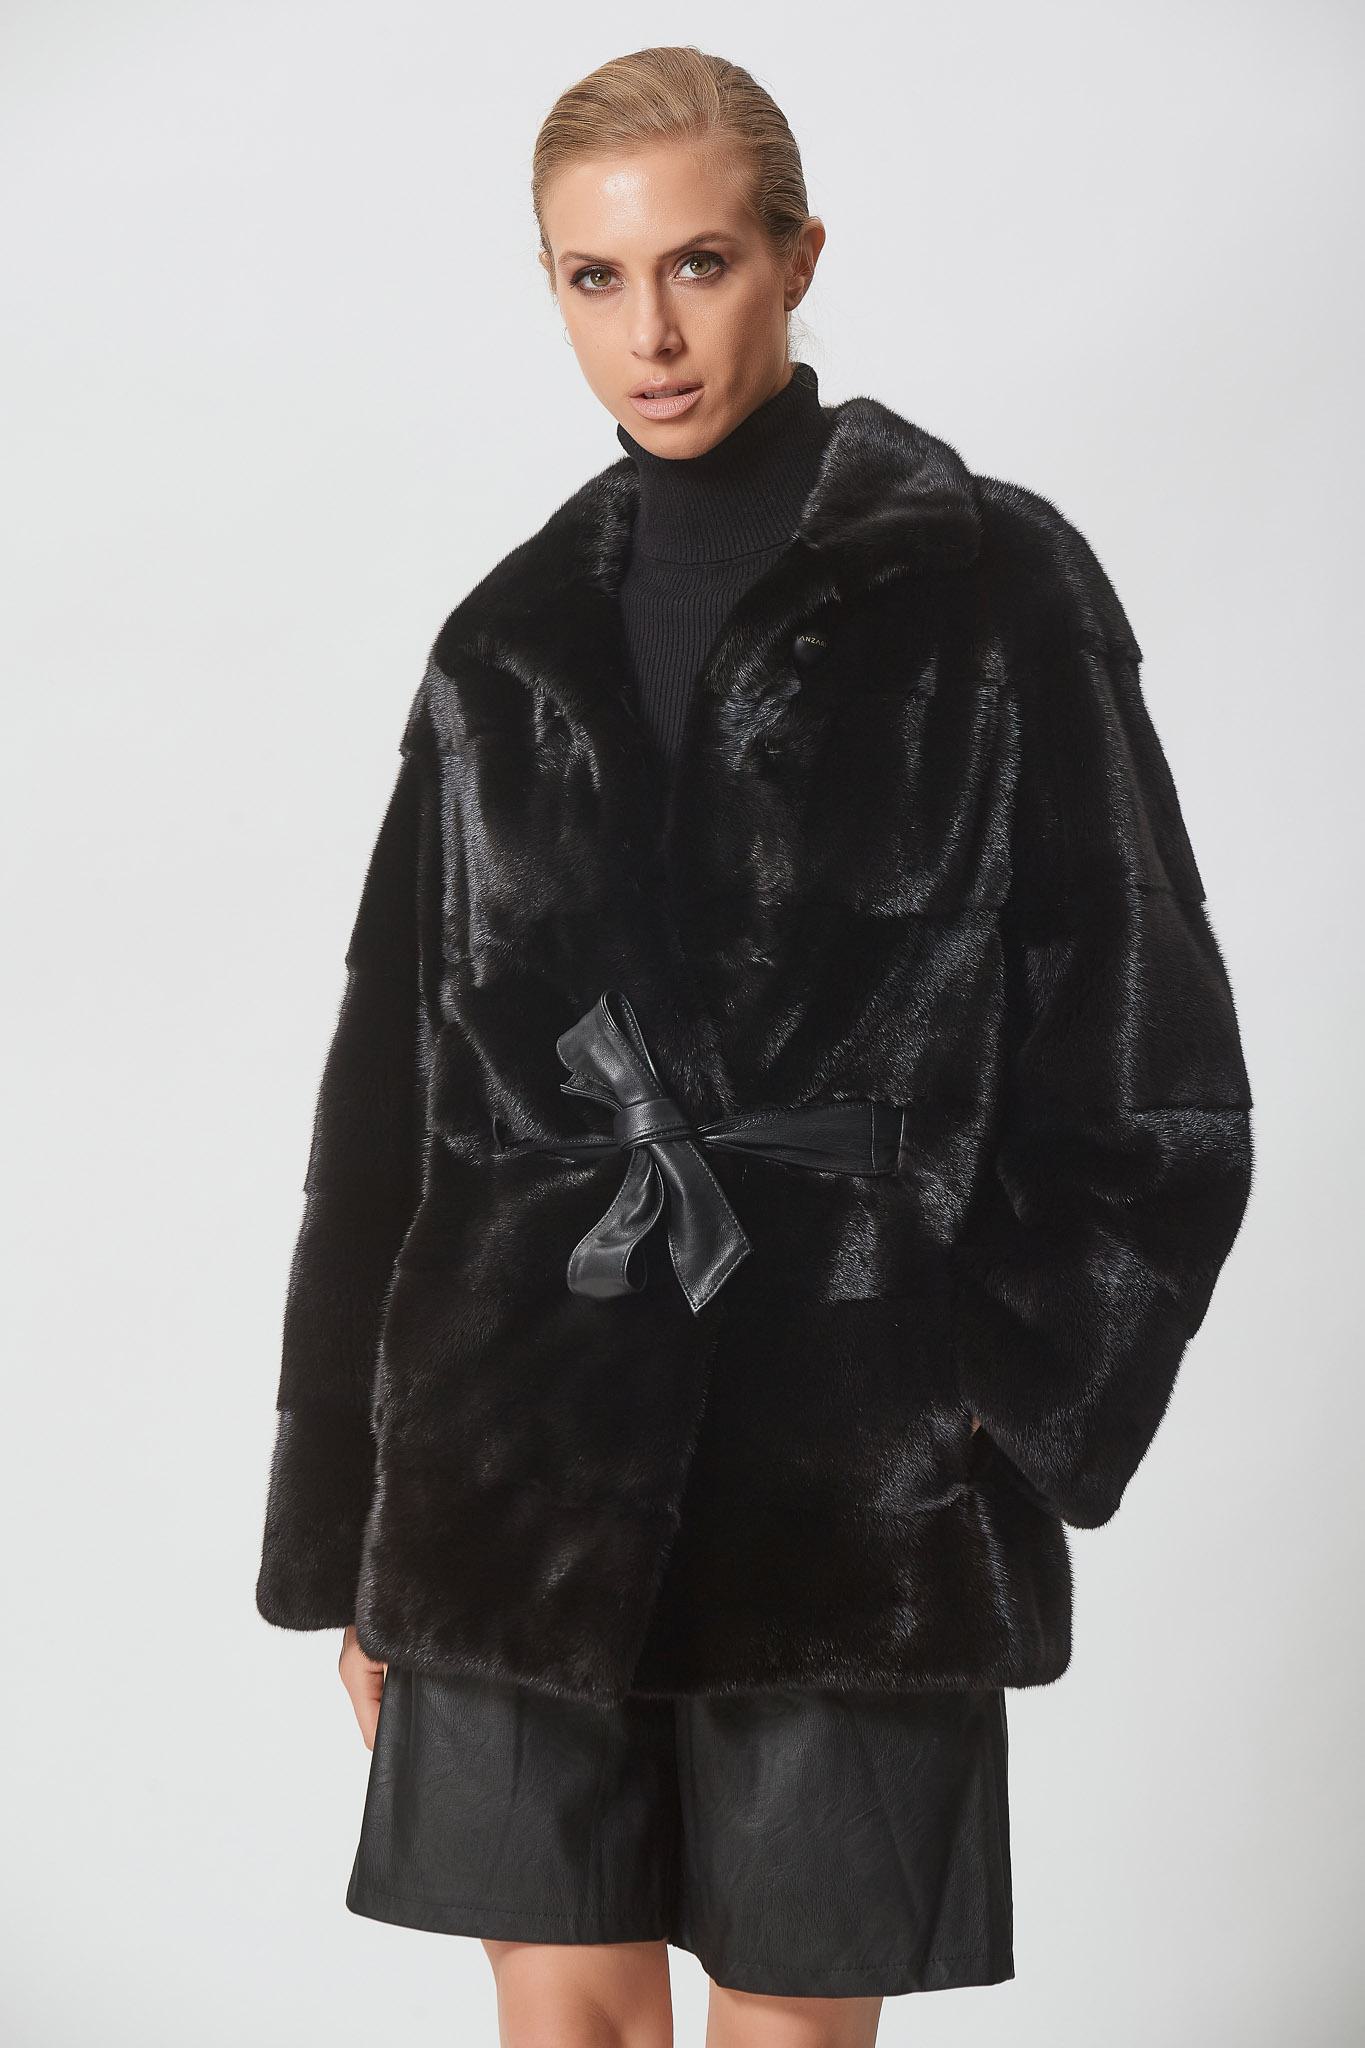 Black Mink Jacket With Leather Belt | Shopifur